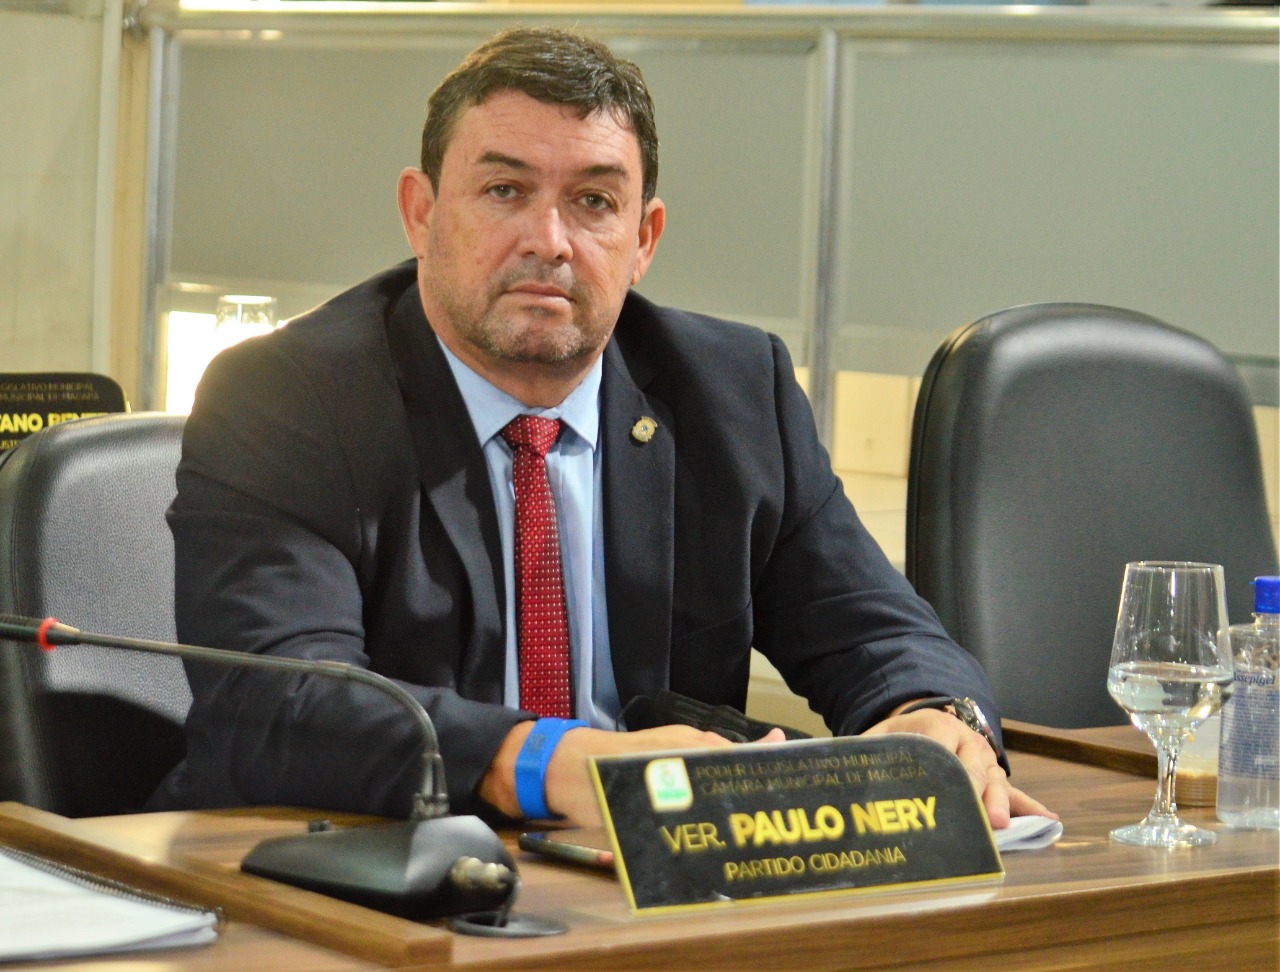 Vereador Paulo Nery aponta a falta iluminação pública em ruas do Macapaba 2